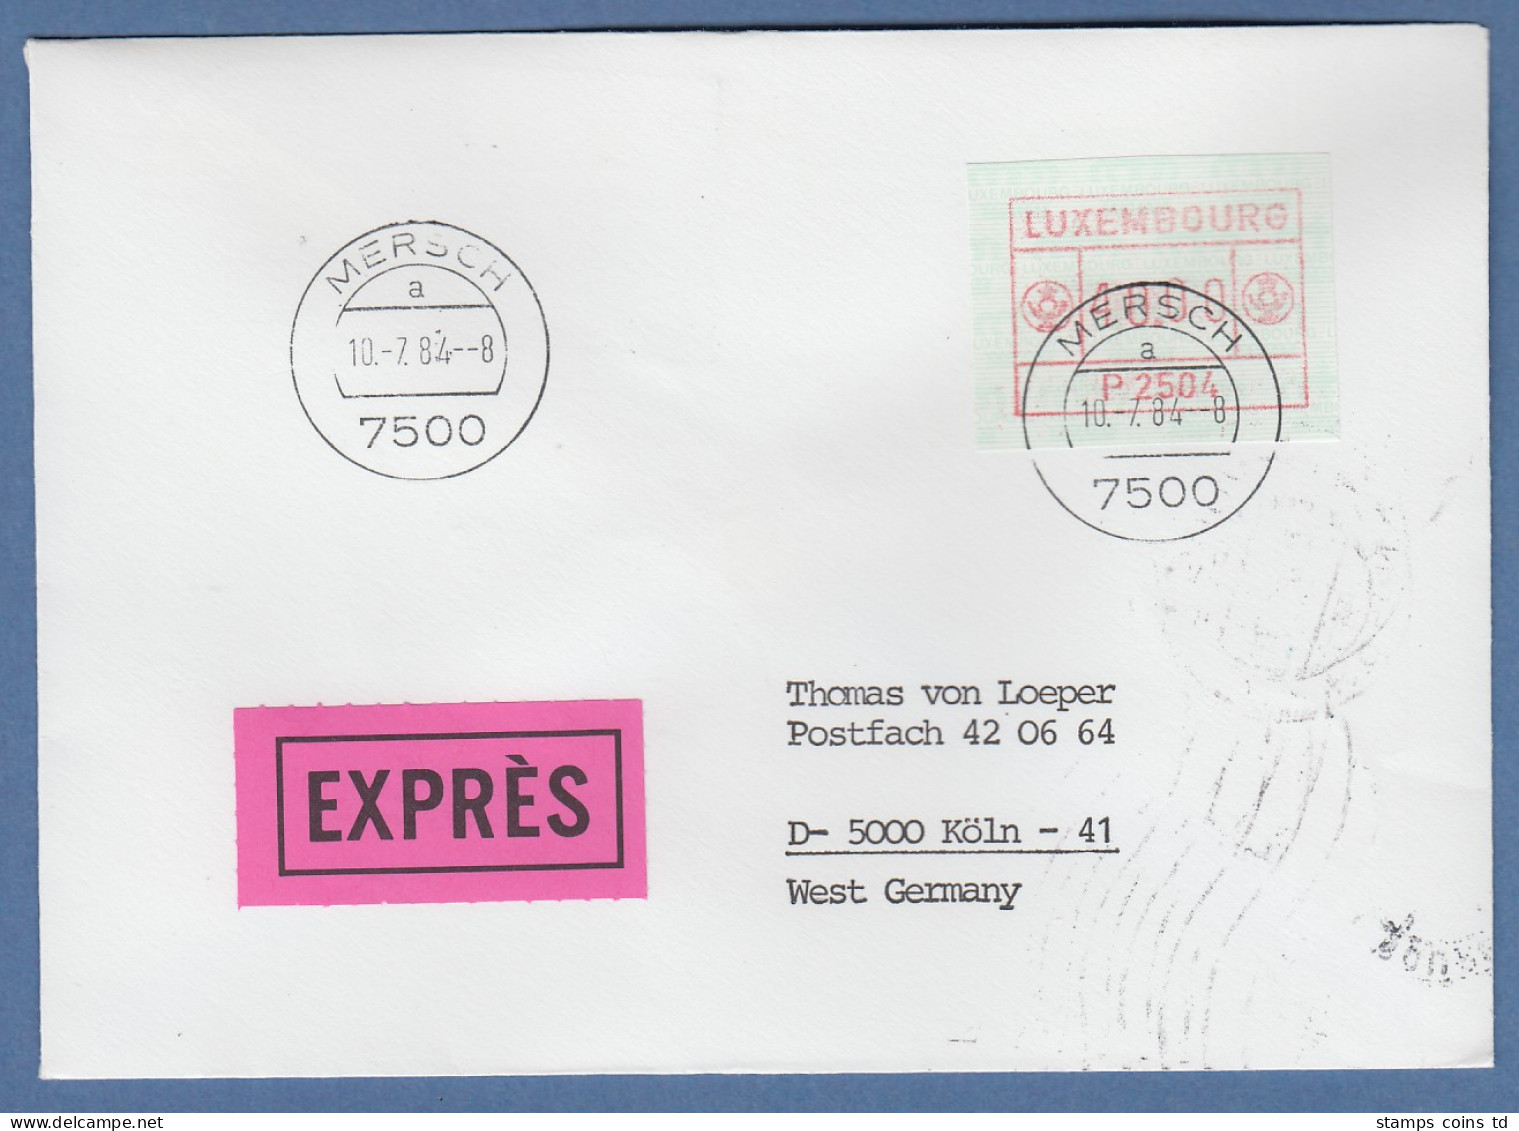 Luxemburg ATM P2504 Hoher Wert 40,00 Auf Expres-FDC Mit O MERSCH 10.7.84 - Postage Labels